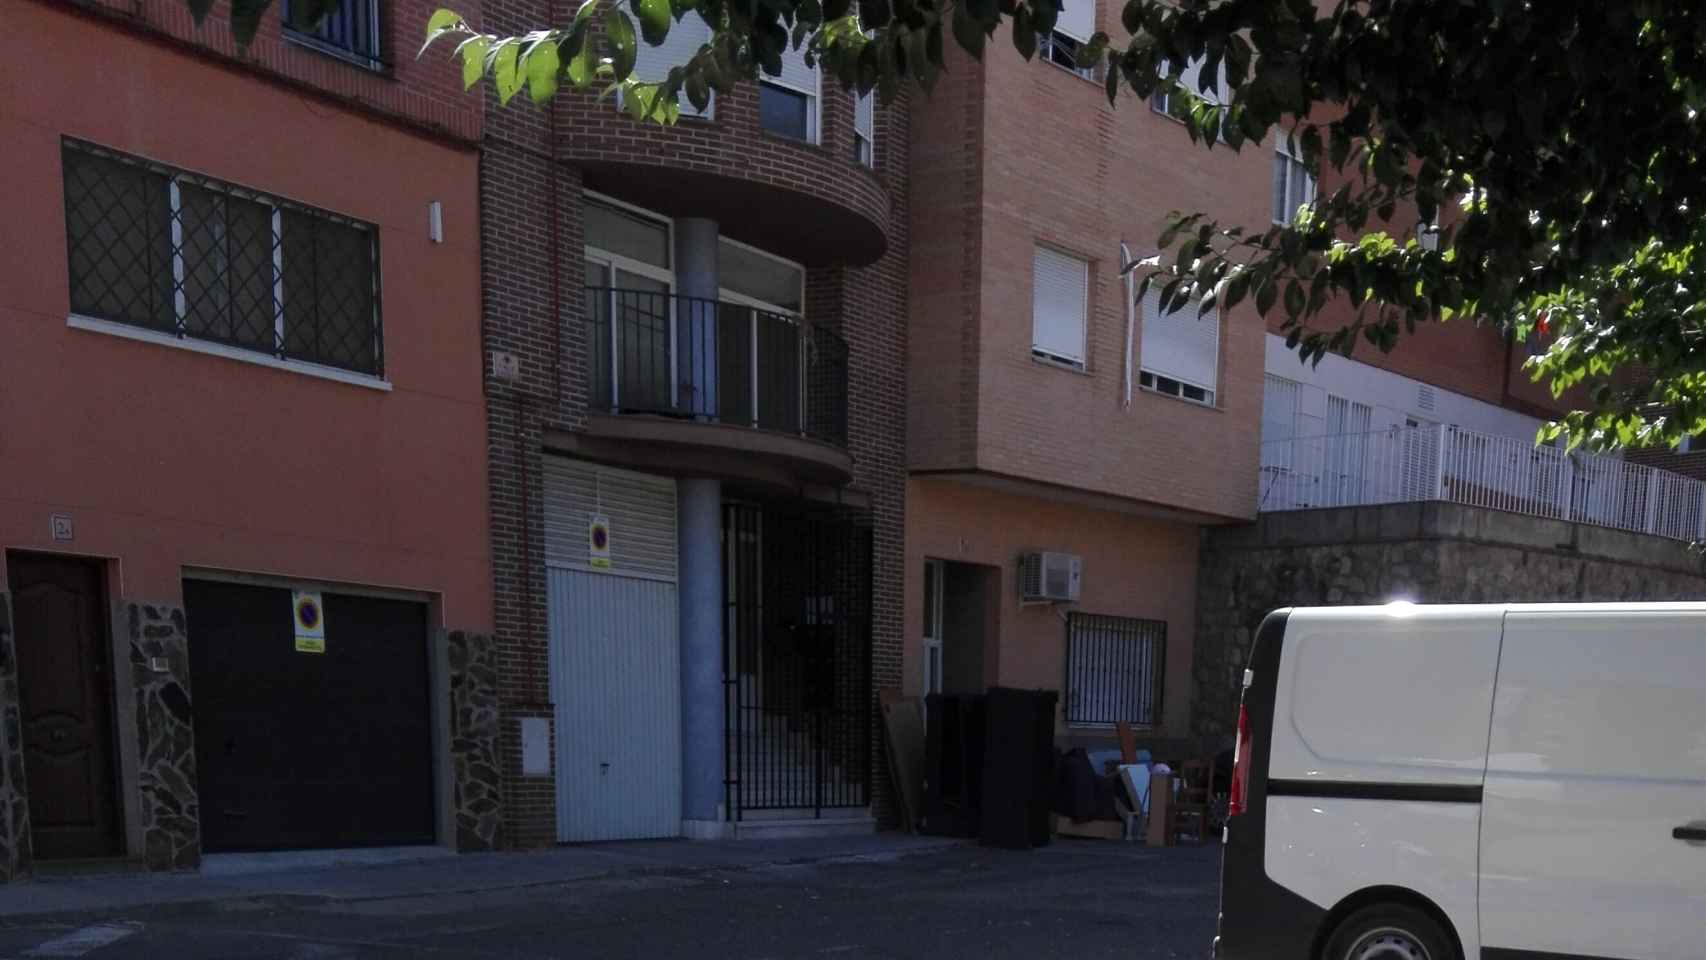 Inmuebles okupados en el barrio de Santa Bárbara, Toledo.